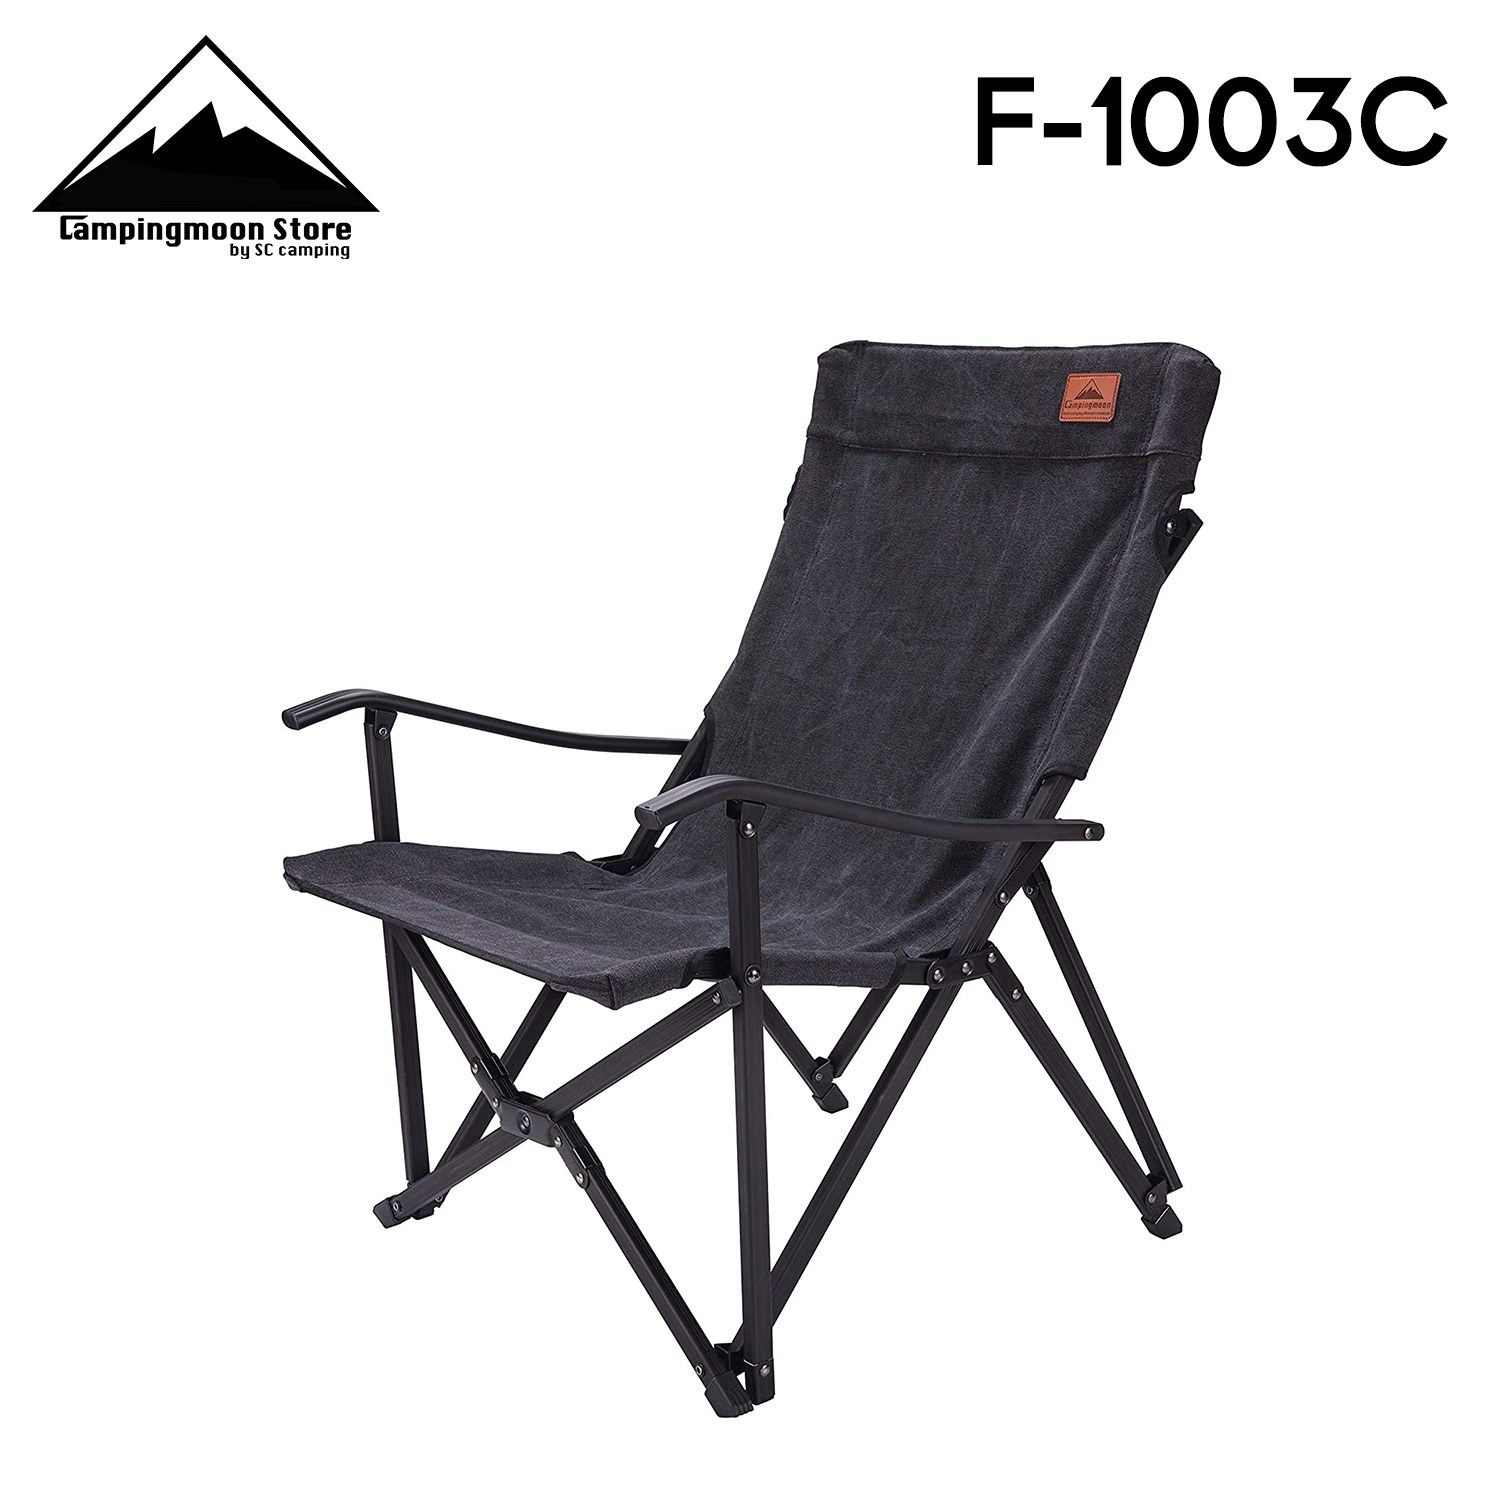 ?⚡️เก้าอี้  Campingmoon [Sling Chair] พับได้ ผ้า Canvas  พร้อมกระเป๋าจัดเก็บ มีสีให้เลือก F-1003C⚡️?